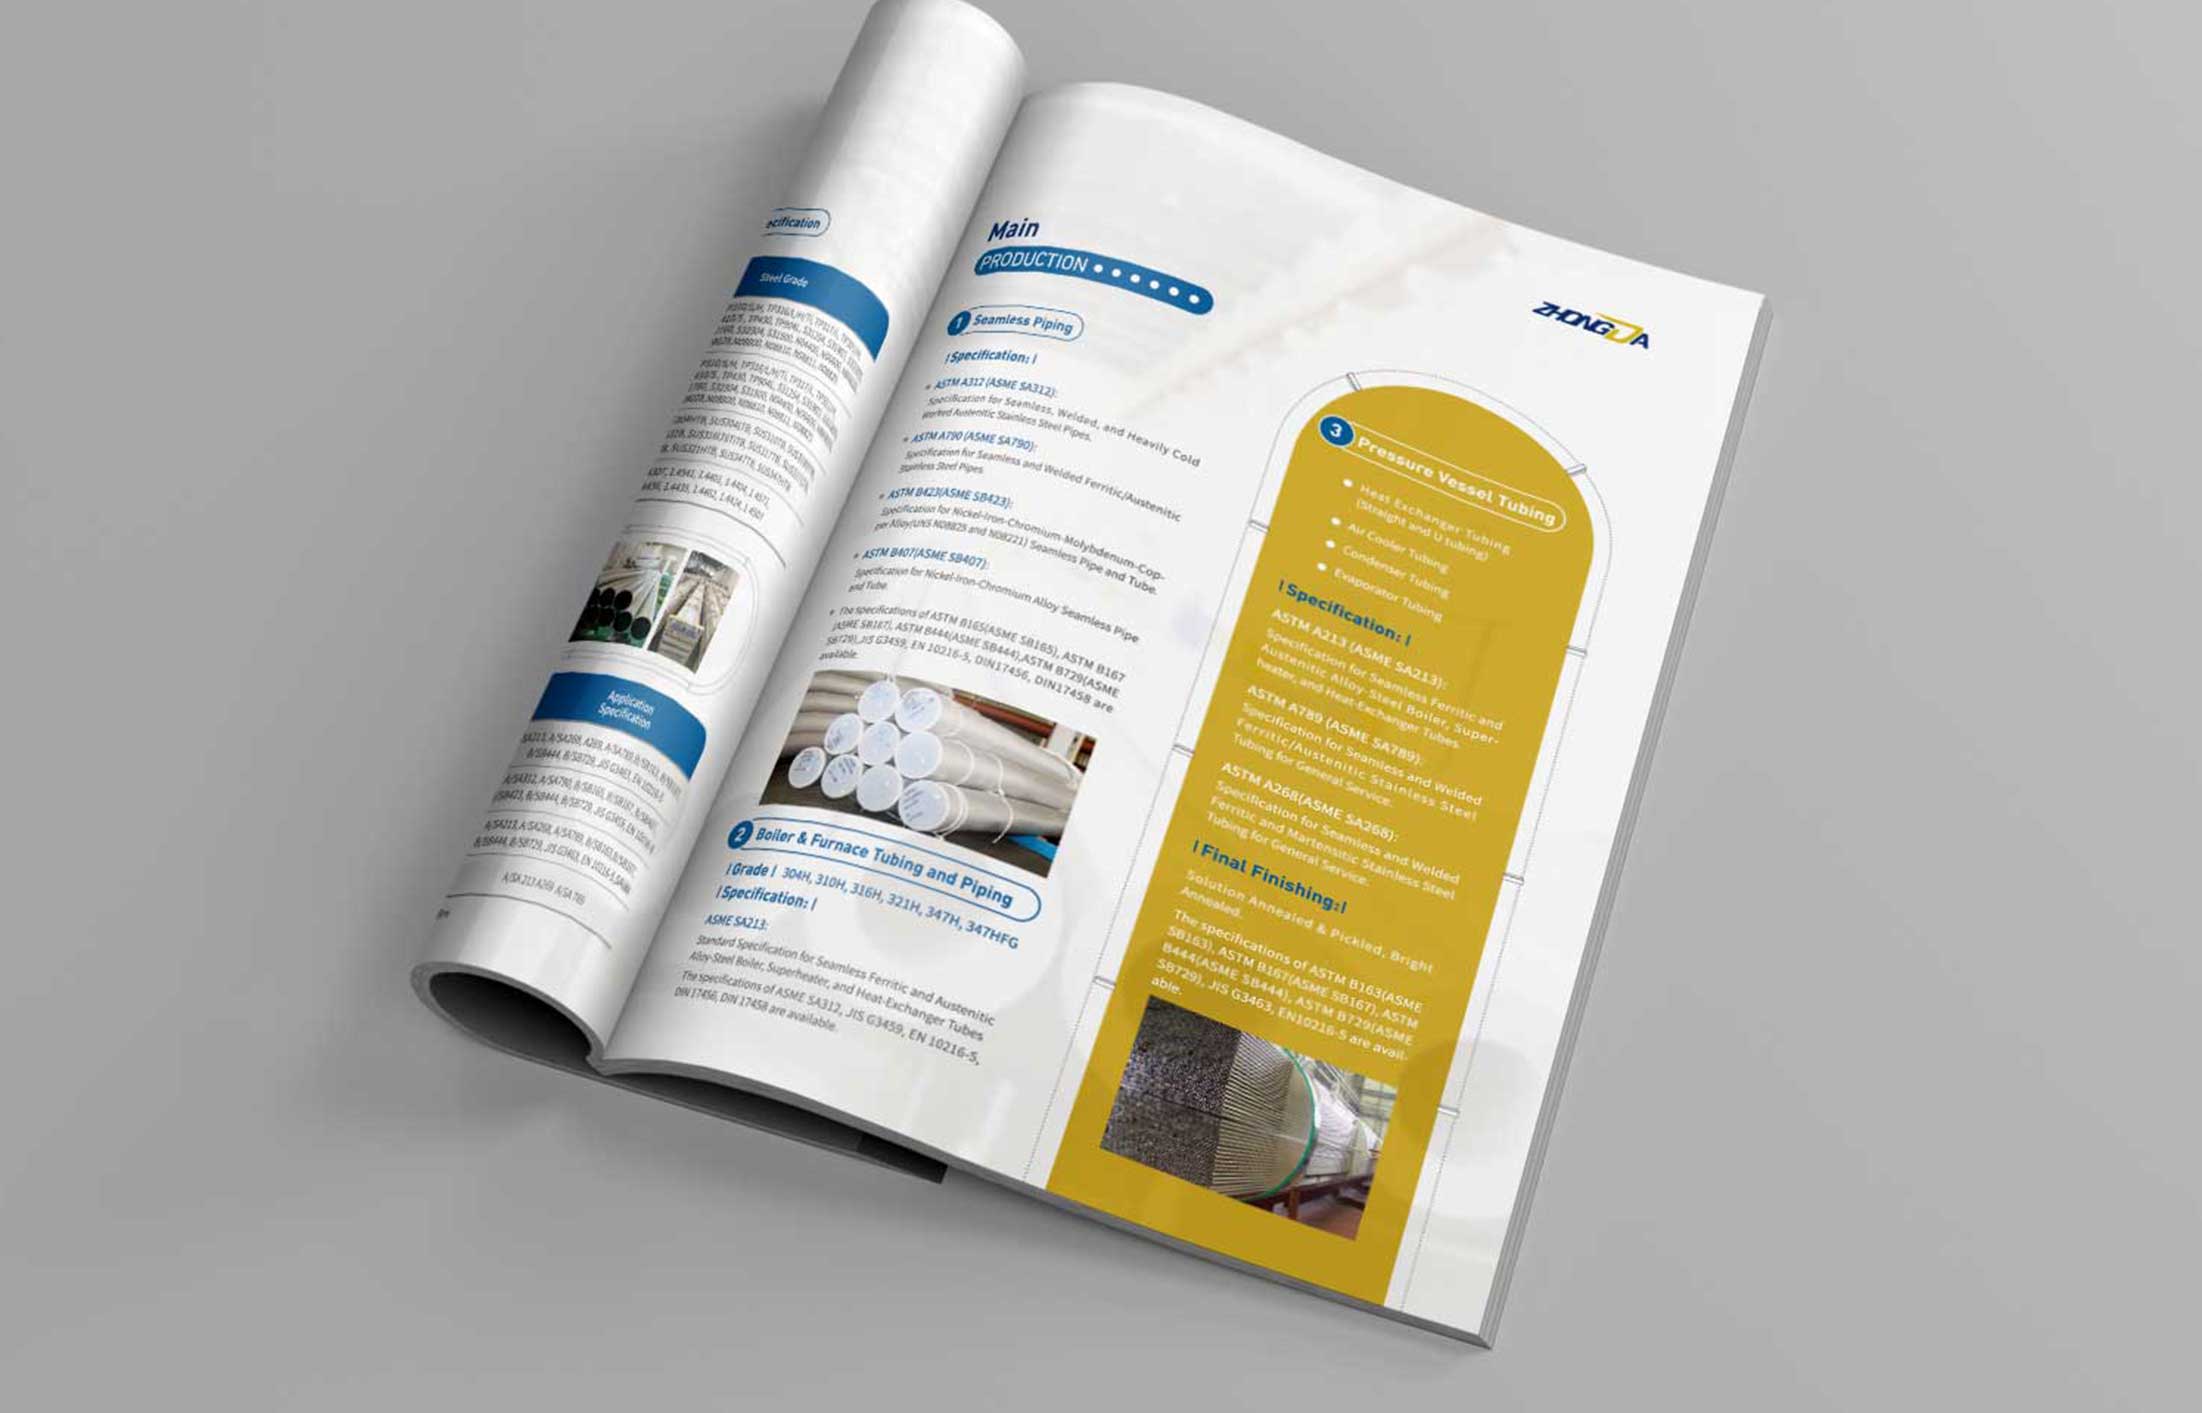 产品画册设计主要用于展示企业信息